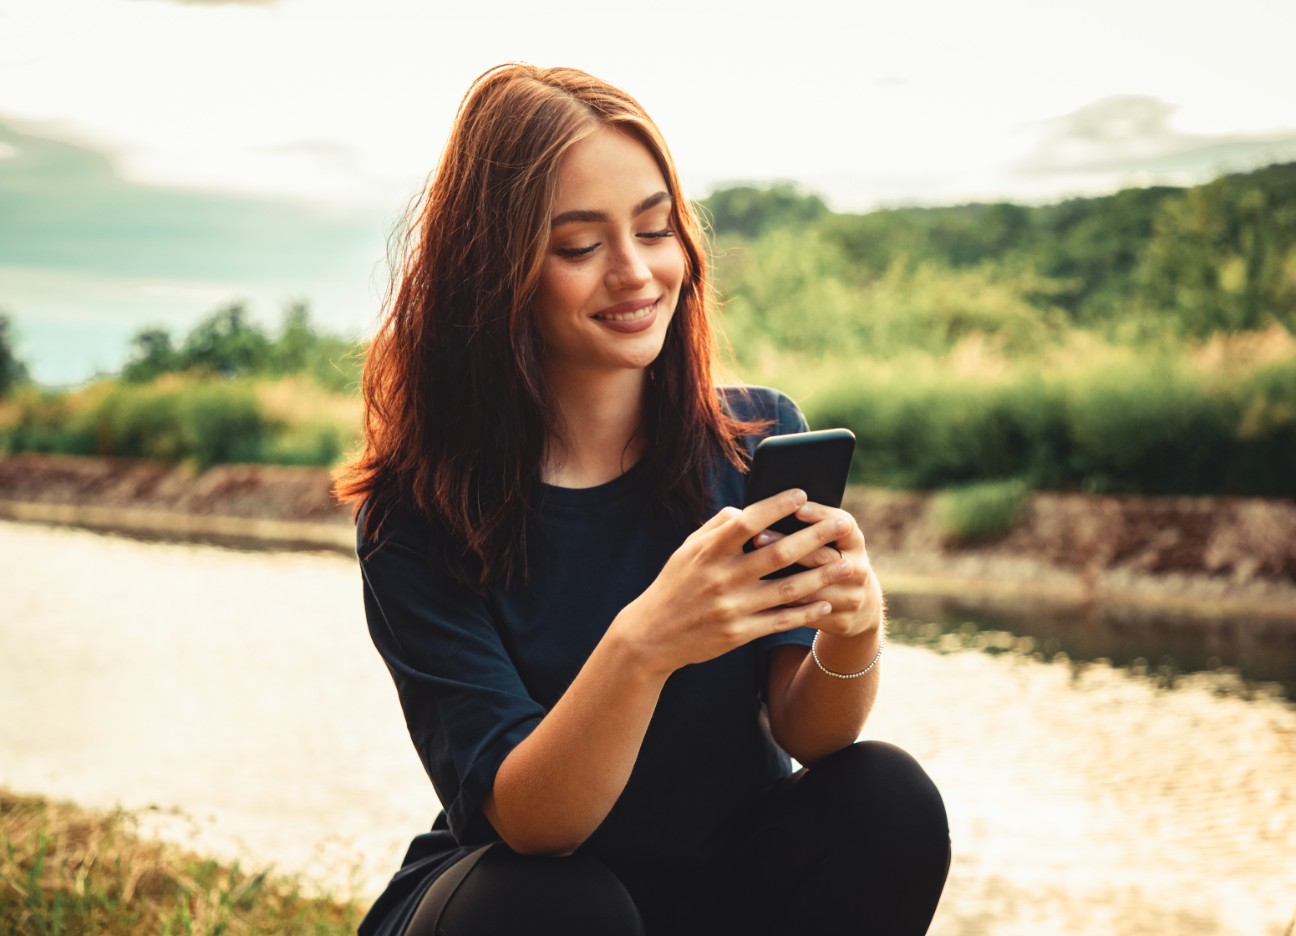 Eine junge Frau schaut am Ufer eines kleinen Flusses auf ihr Smartphone.